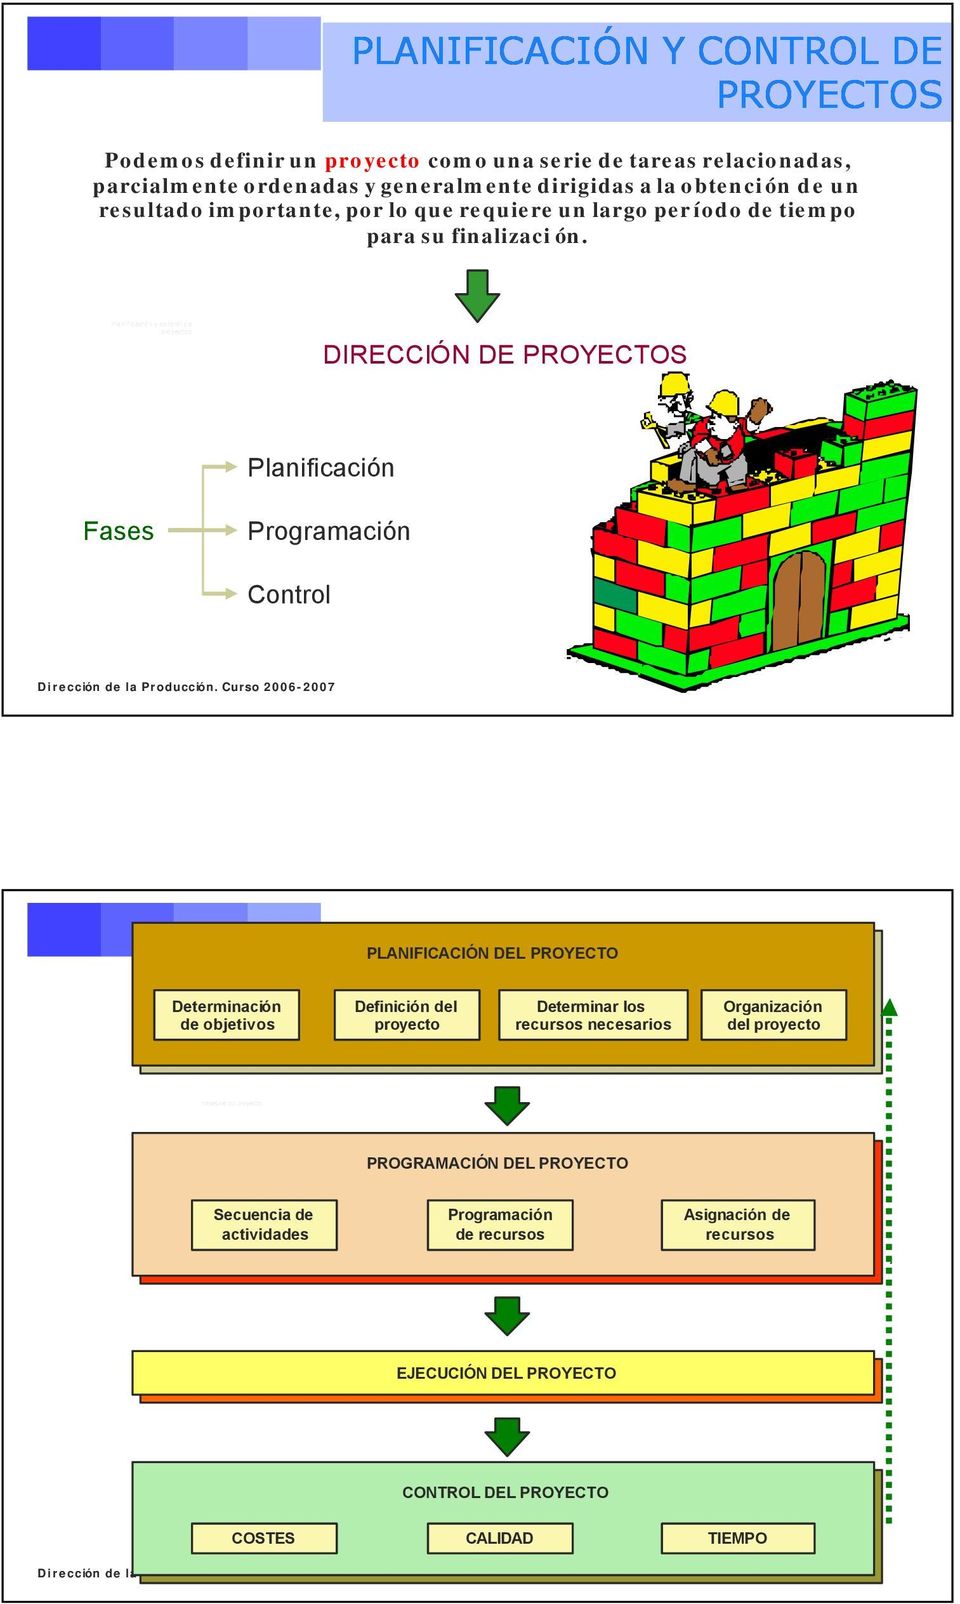 Planificación n y control de proyectos DIRECCIÓN DE PROYECTOS Planificación Fases Programación Control PLANIFICACIÓN DEL PROYECTO Determinación de objetivos Definición del